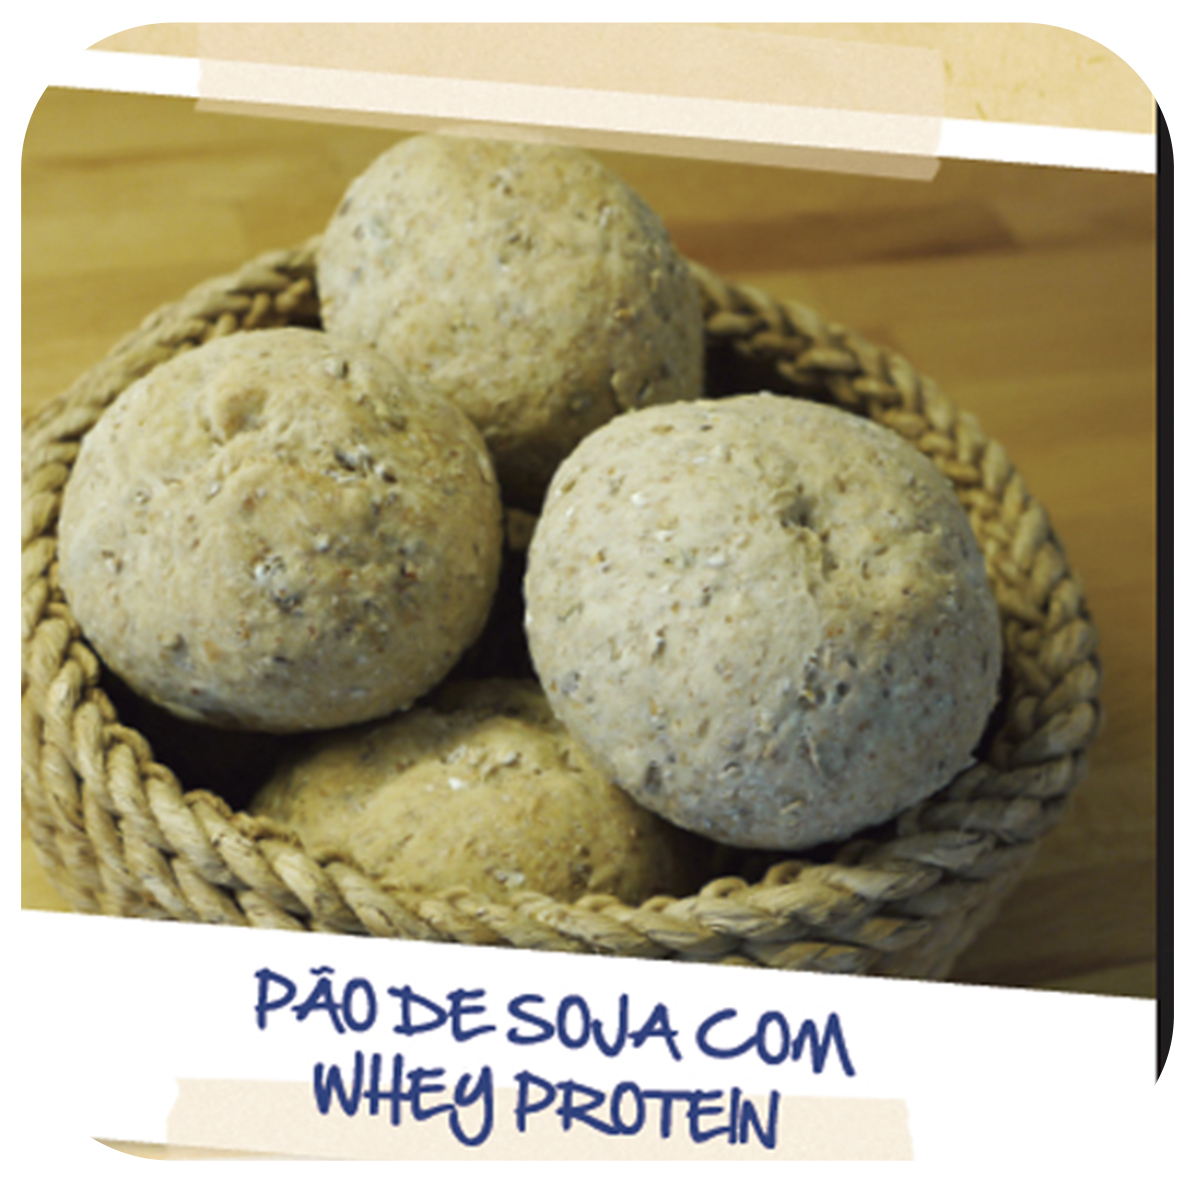 Suplementação Gourmet: Pão de soja com whey protein 